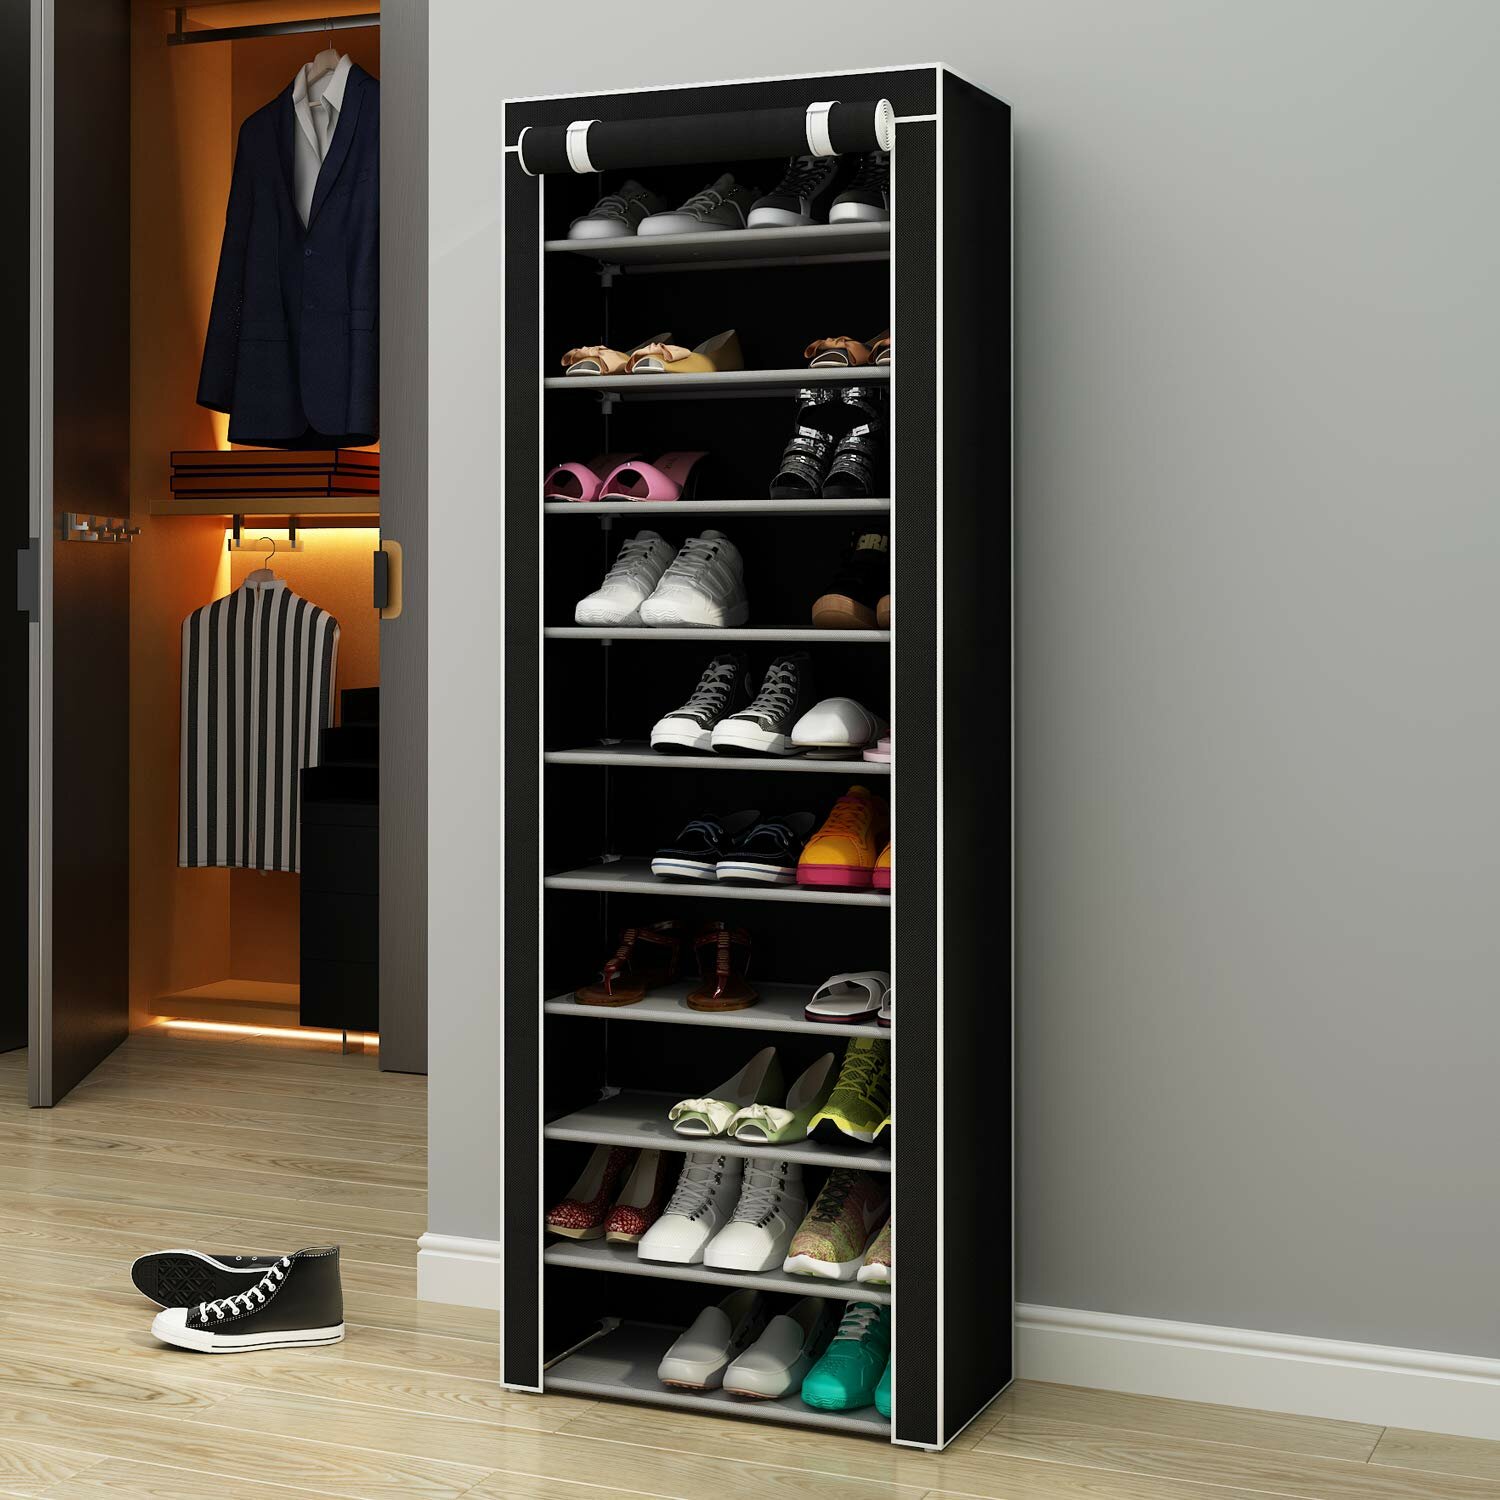 https://assets.wfcdn.com/im/54142578/compr-r85/1127/112705408/30-pair-shoe-storage-cabinet.jpg